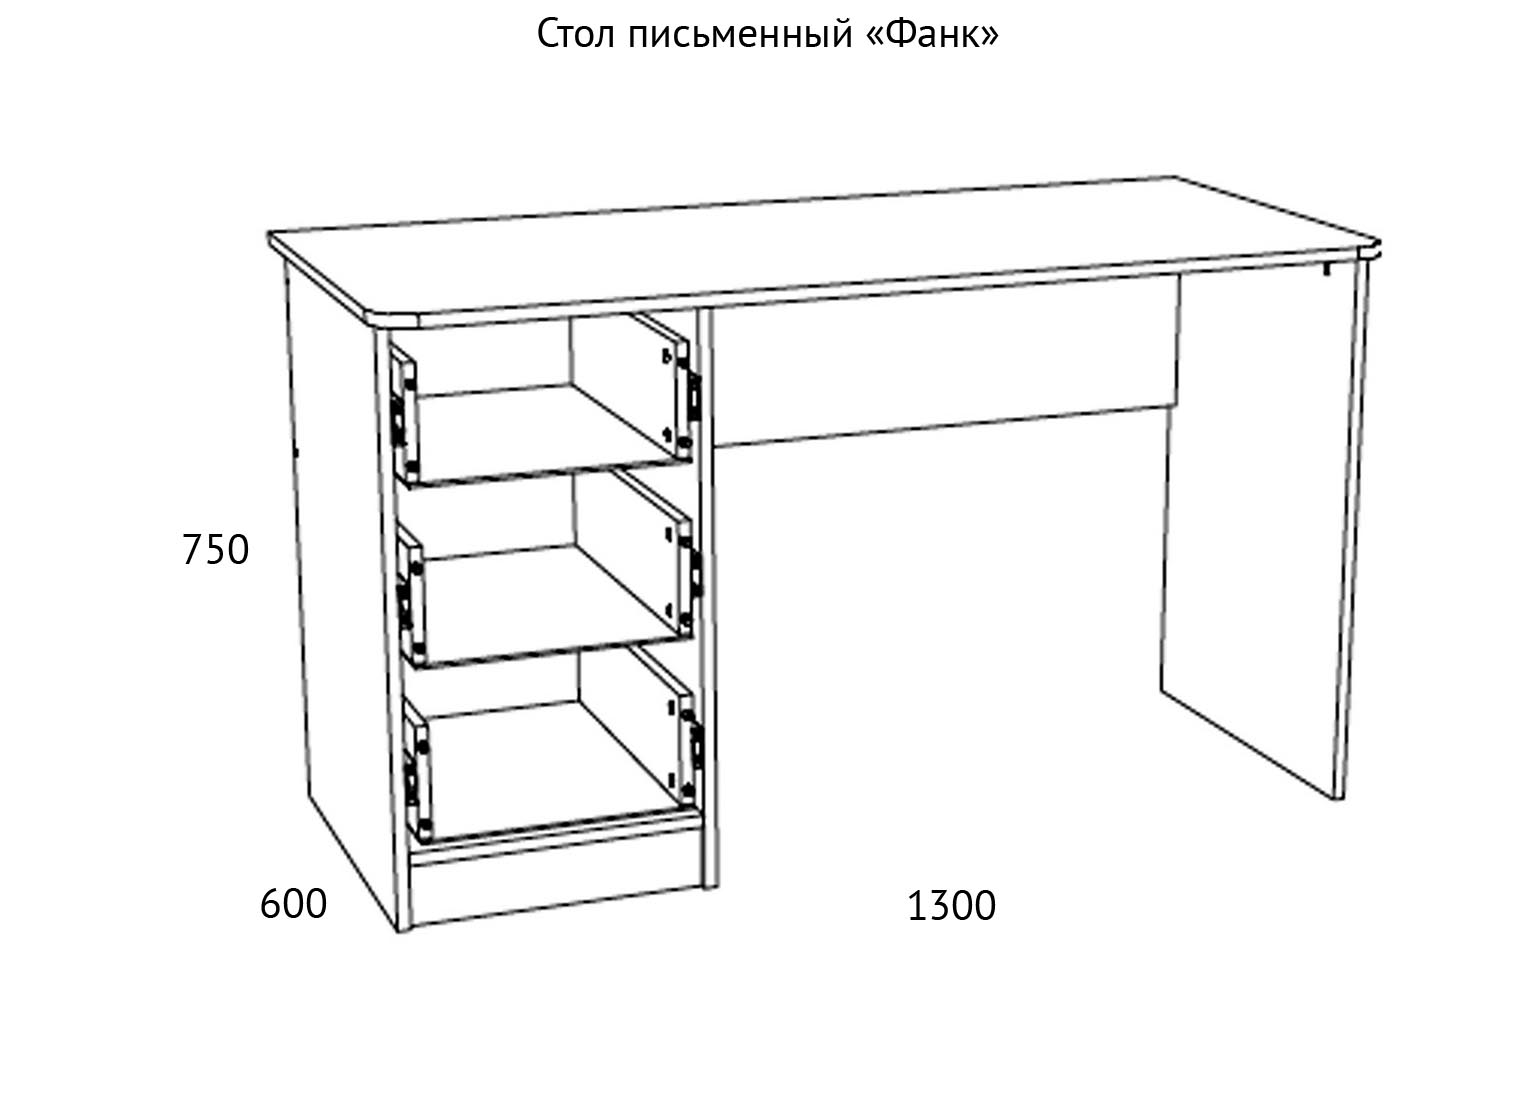 НМ 011.47-01 Стол письменный Фанк схема Мебель Краснодар